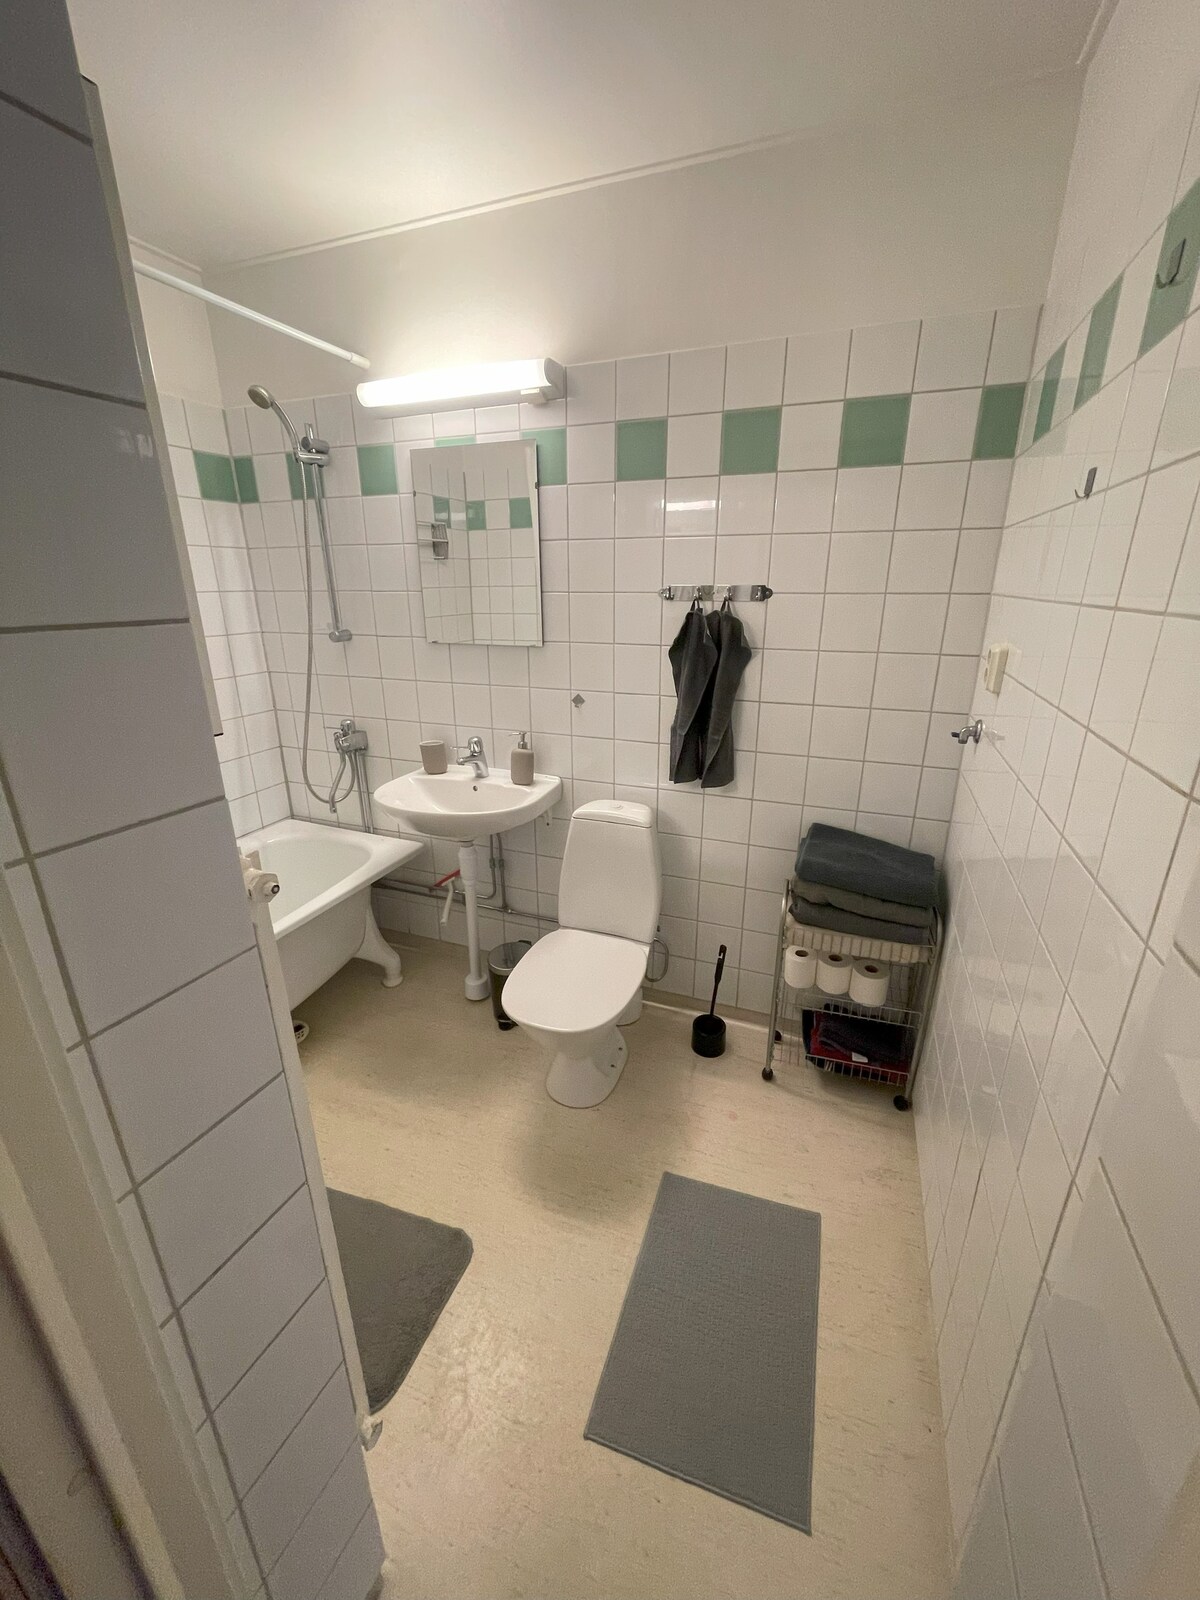 Örebro的舒适公寓